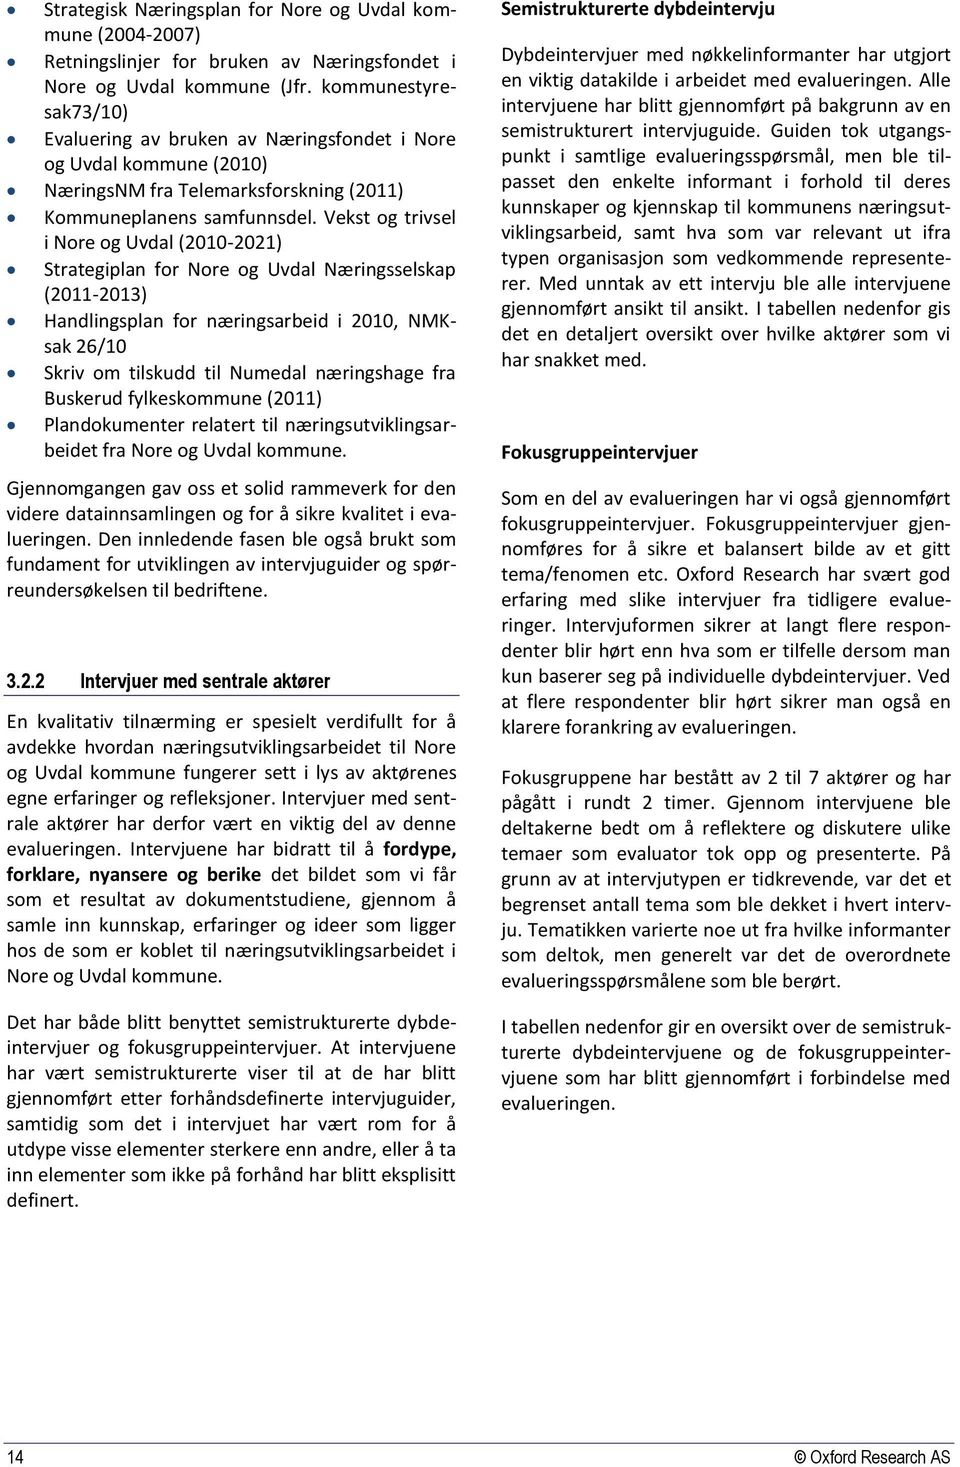 Vekst og trivsel i Nore og Uvdal (2010-2021) Strategiplan for Nore og Uvdal Næringsselskap (2011-2013) Handlingsplan for næringsarbeid i 2010, NMKsak 26/10 Skriv om tilskudd til Numedal næringshage